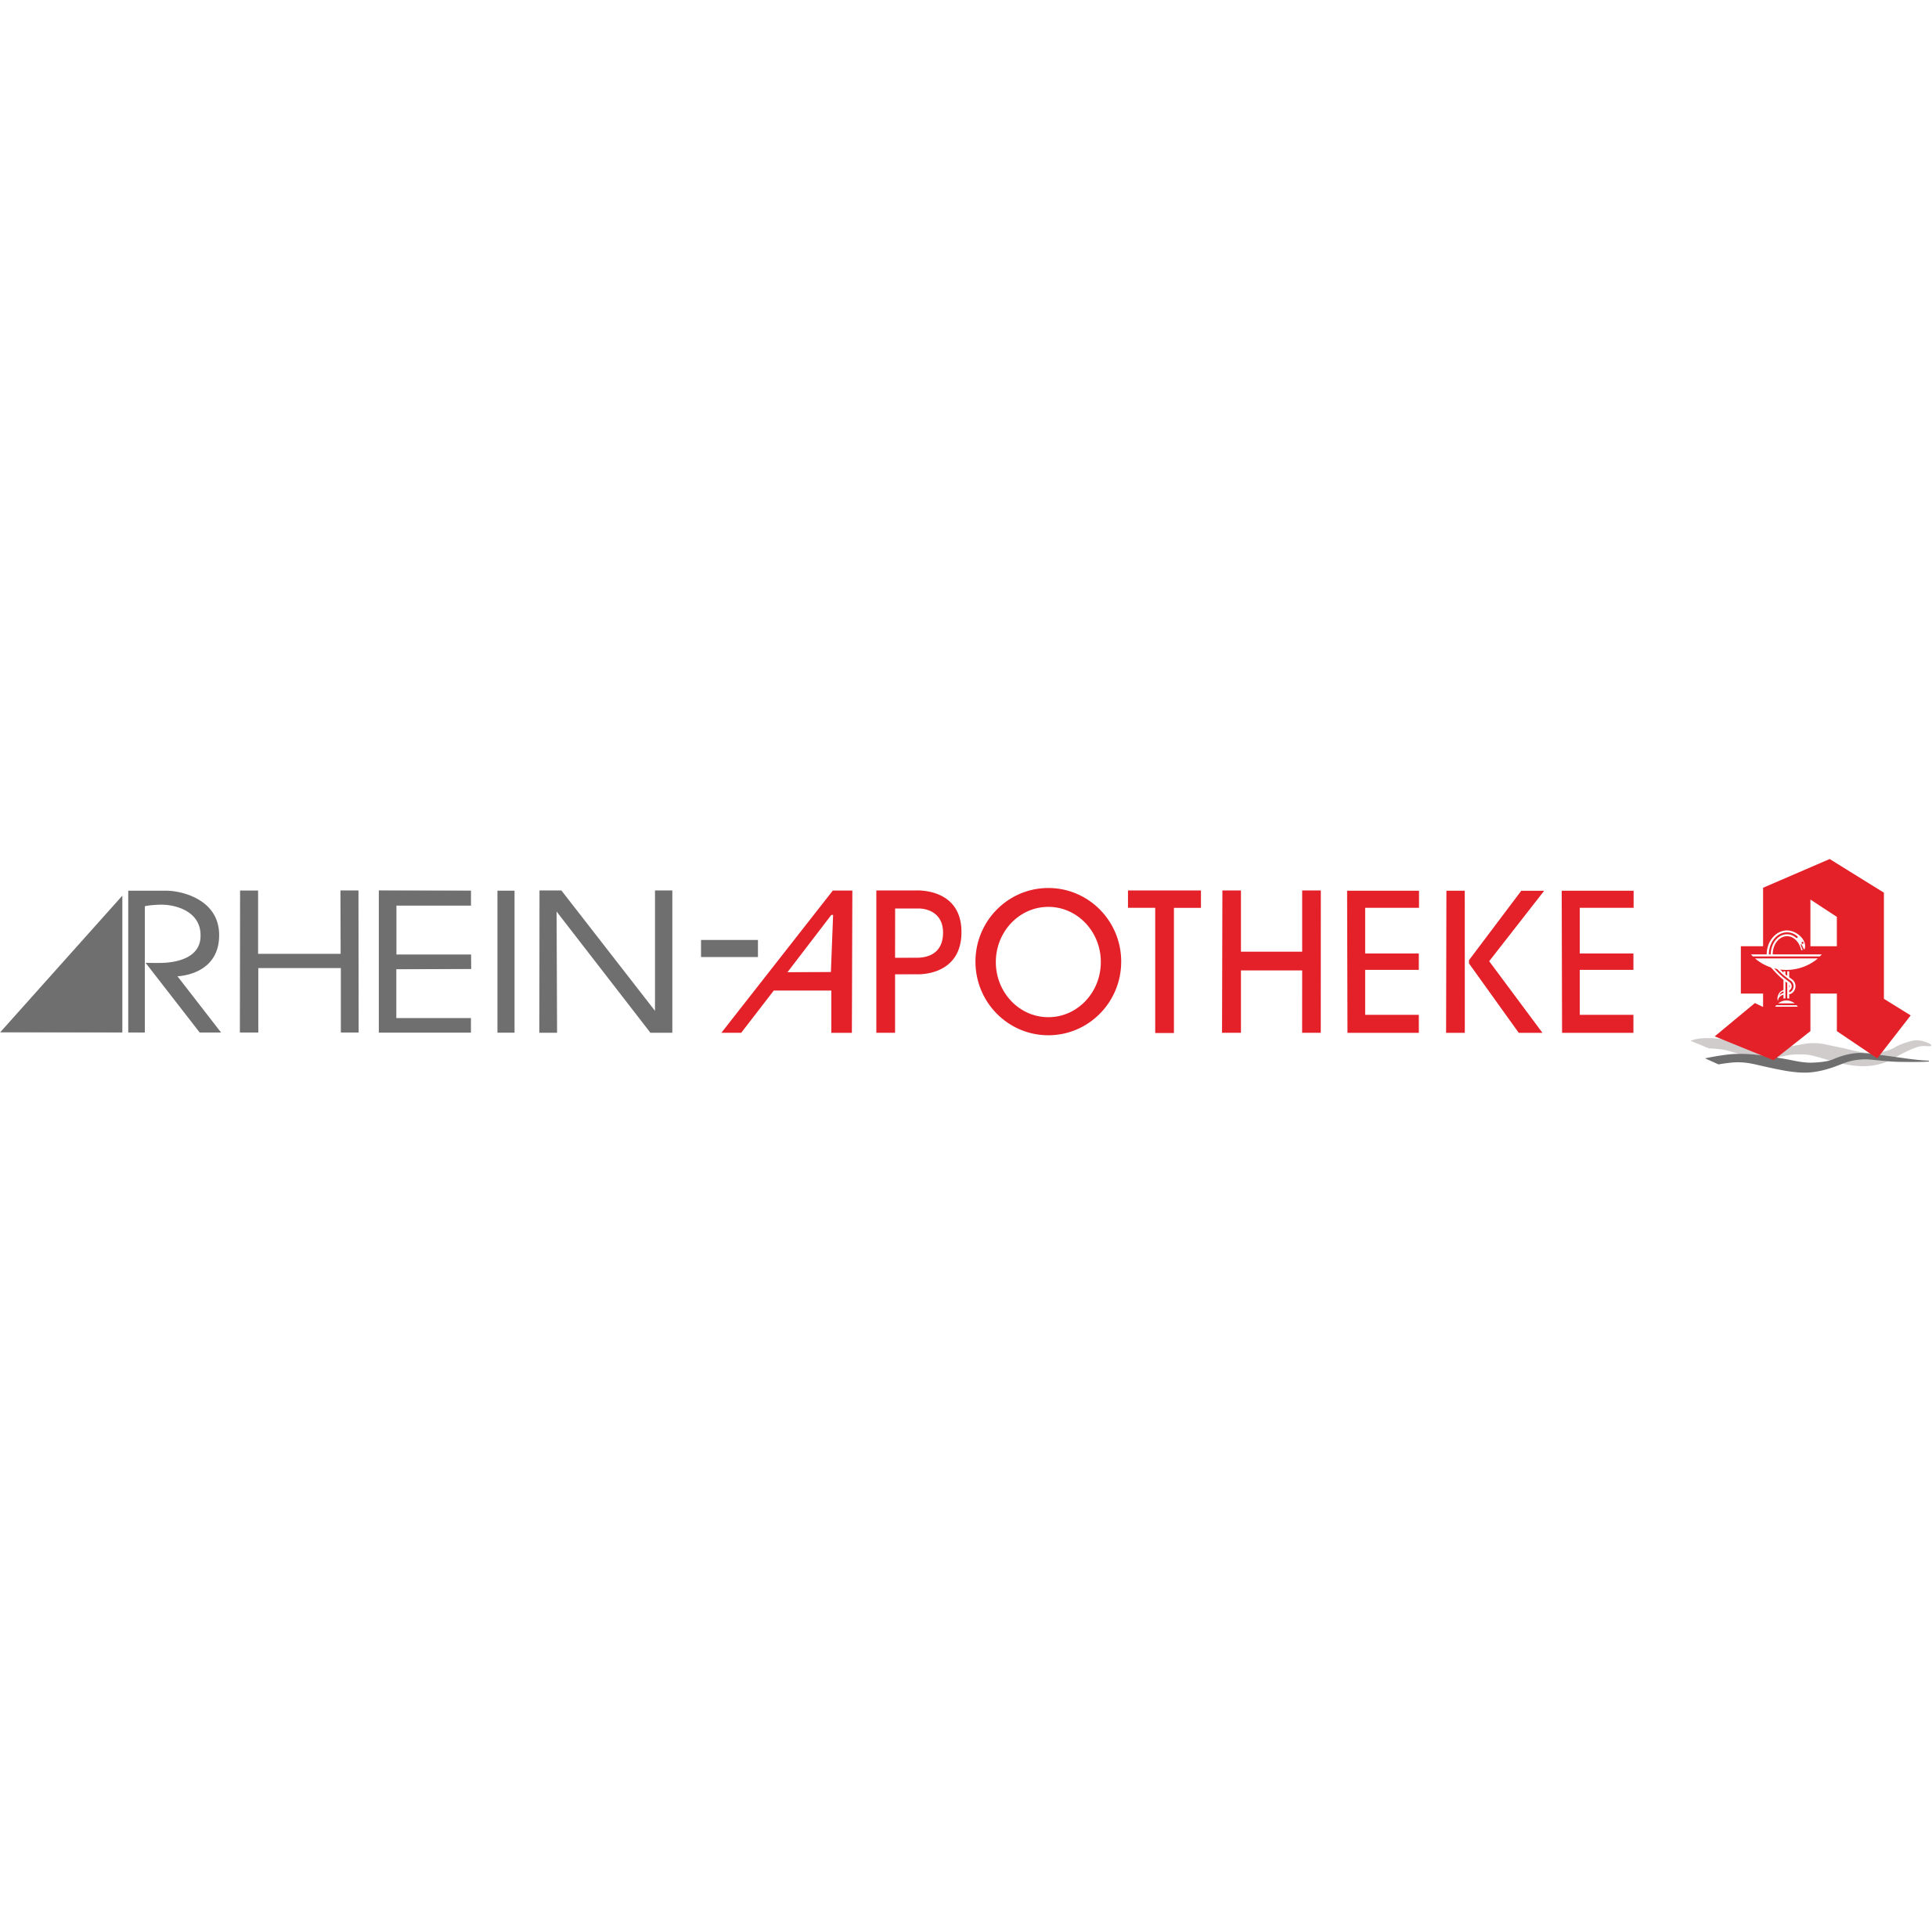 Rhein-Apotheke in Dormagen - Logo